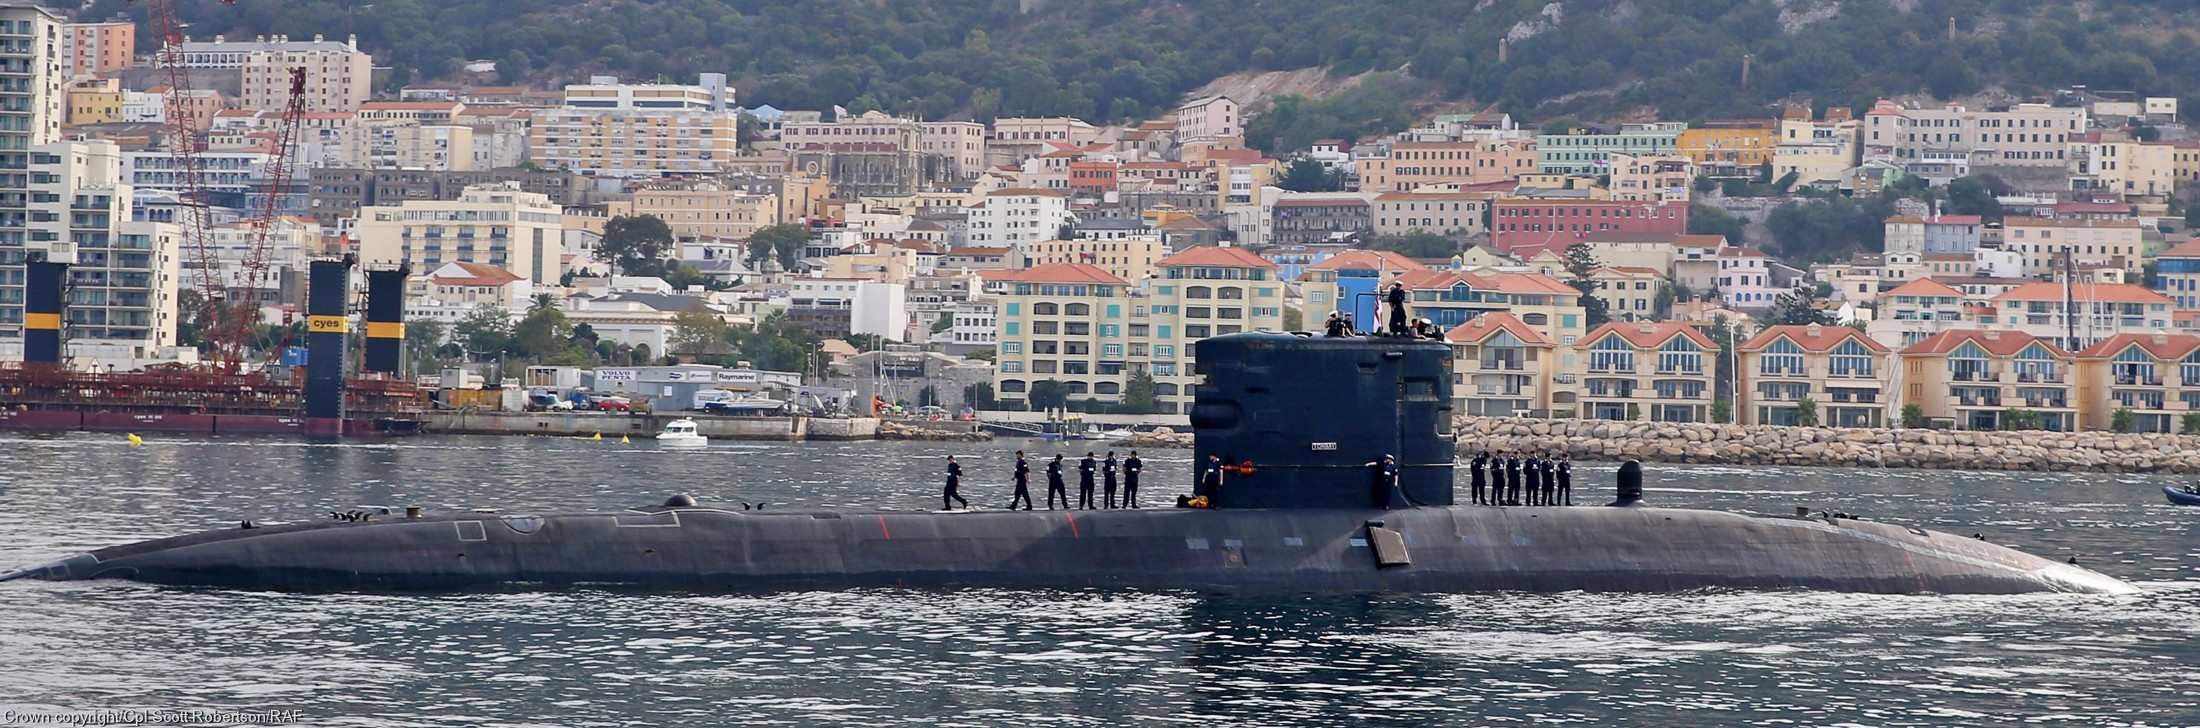 s90 hms torbay trafalgar class attack submarine hunter killer royal navy 04